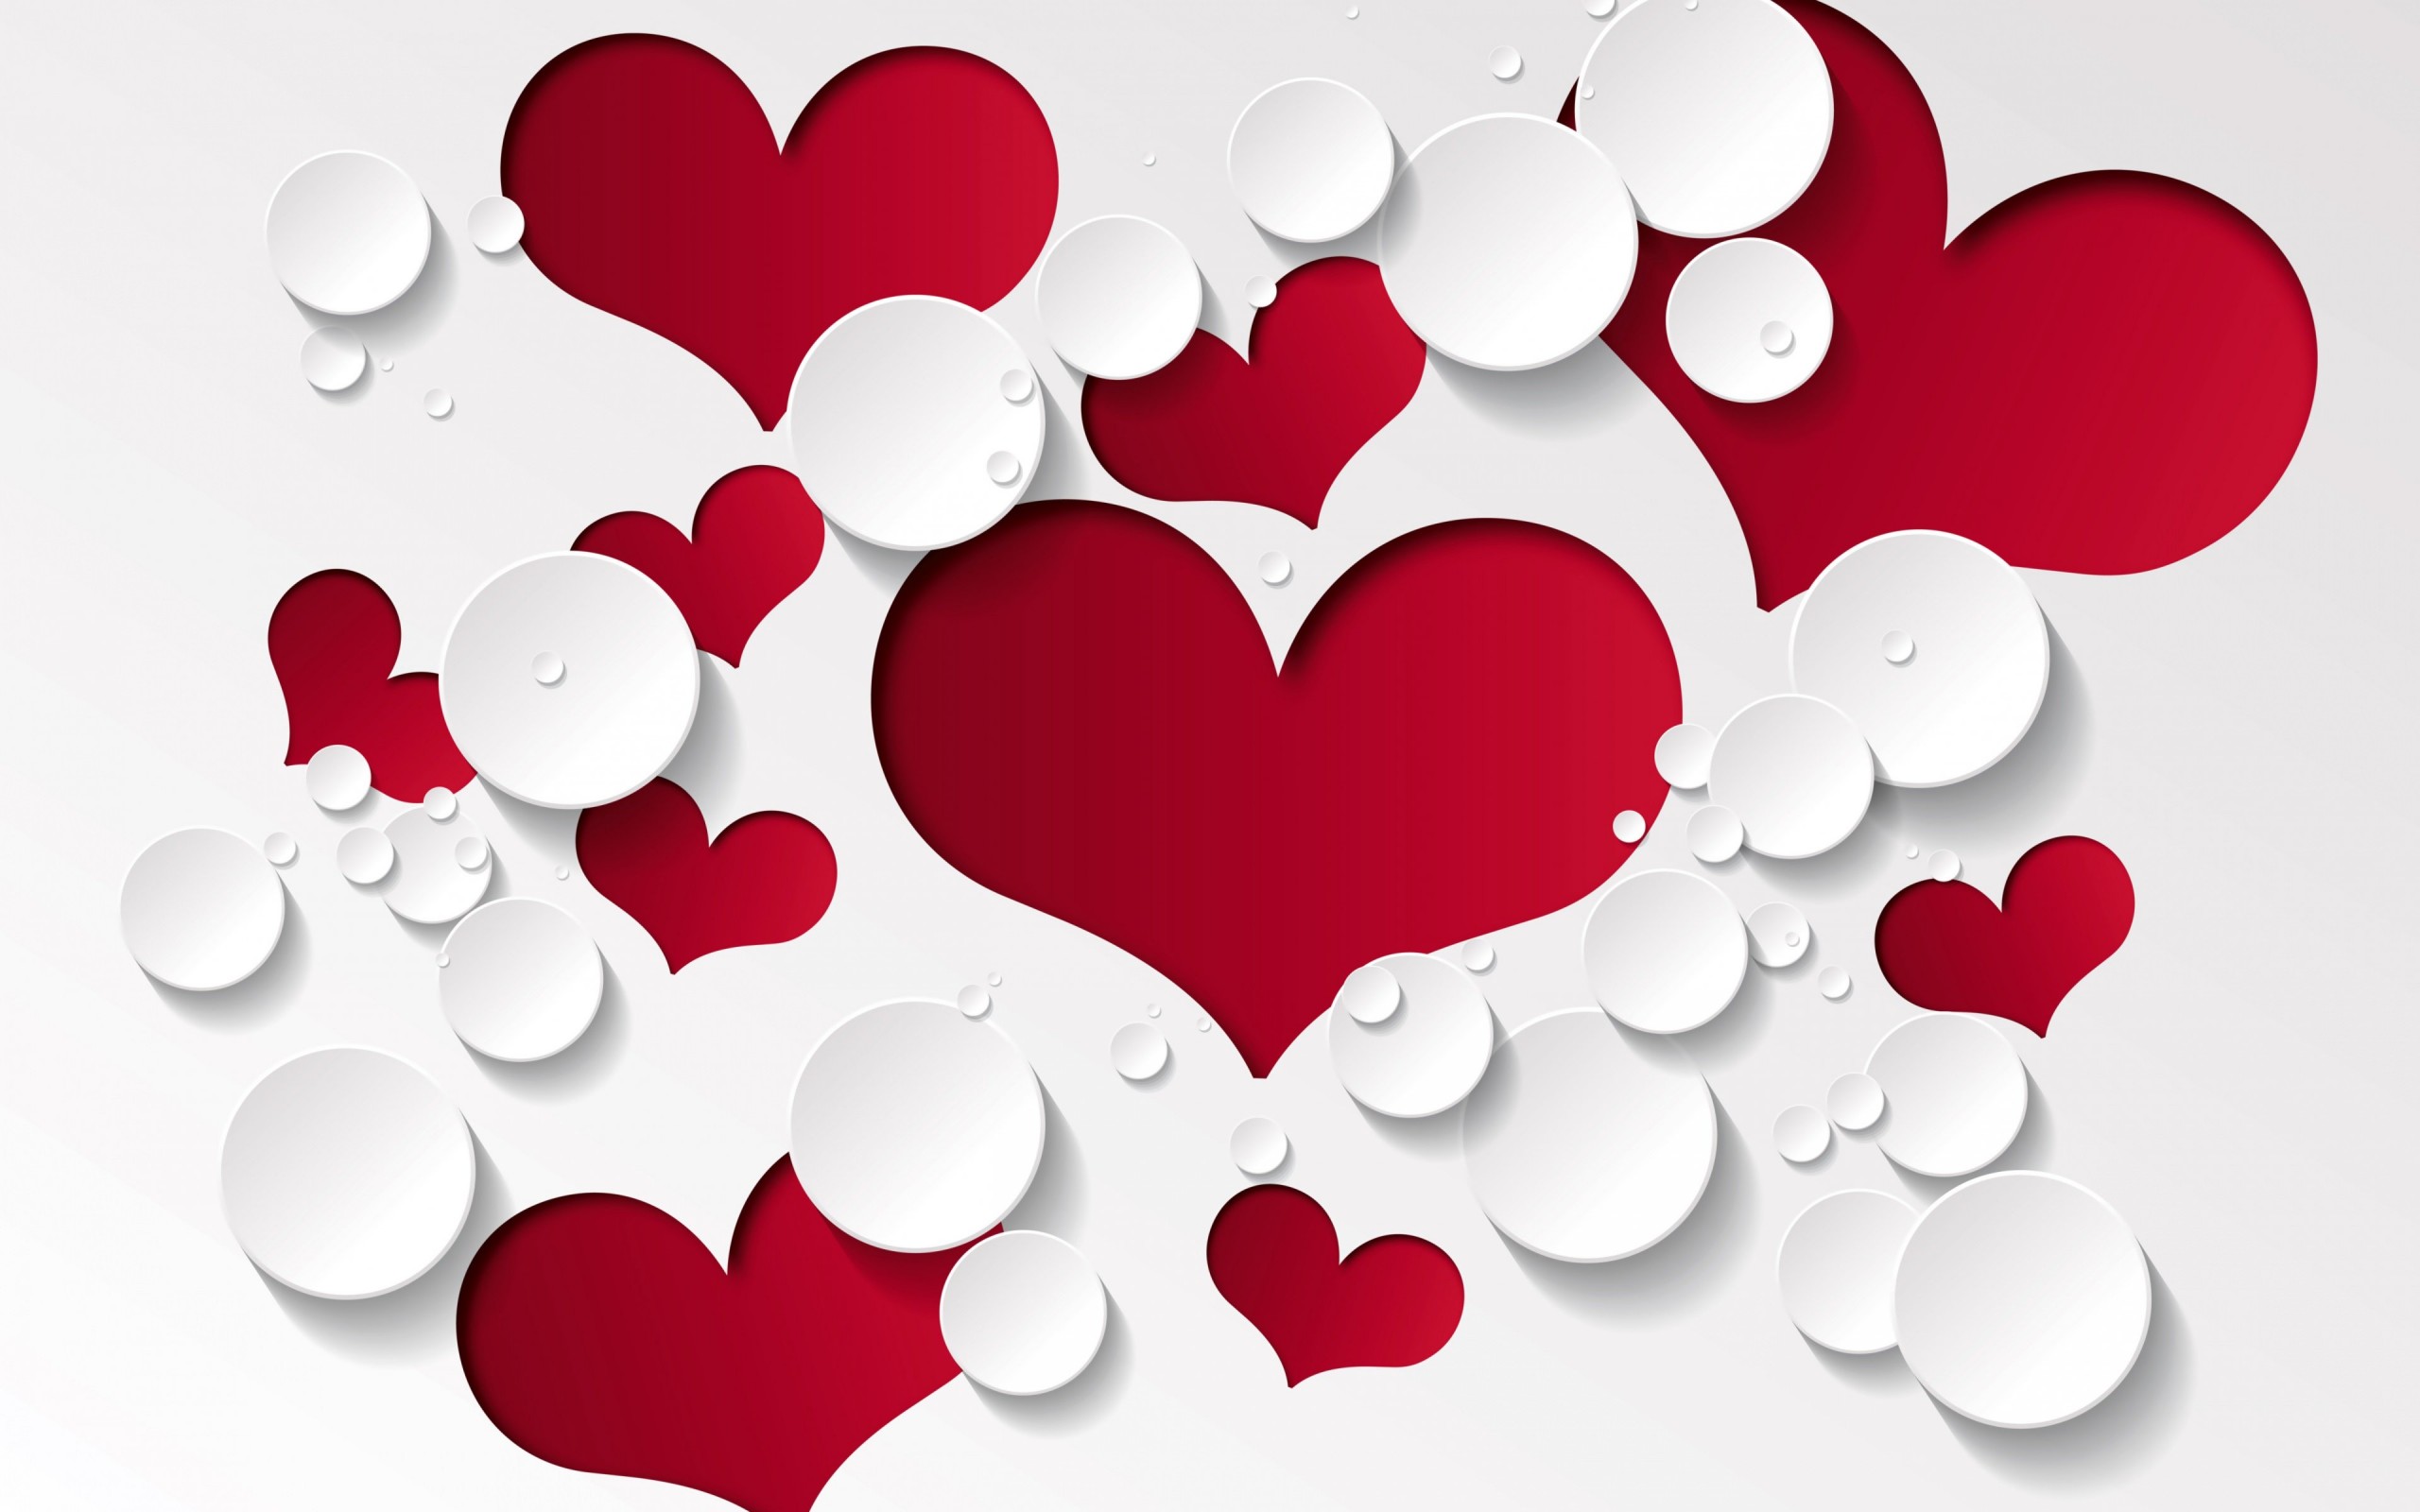 Love Heart Shaped Pattern Wallpaper for Desktop 2560x1600